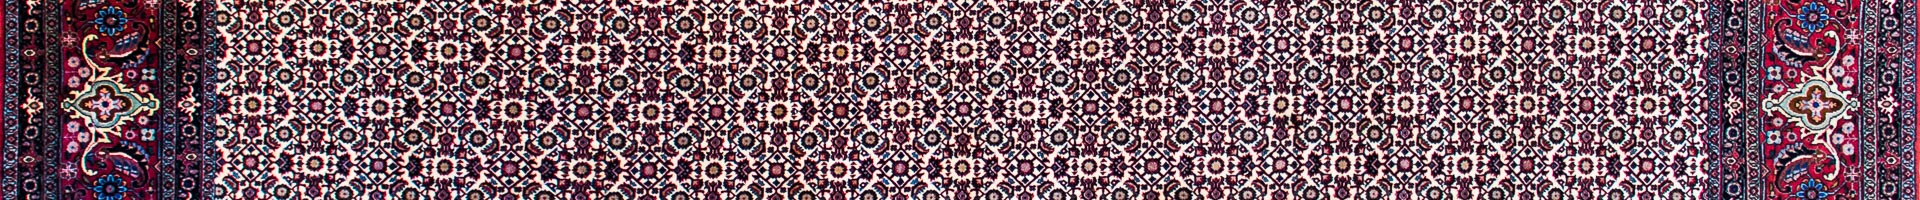 Bidjar Persian Carpet Rug N1Carpet Montreal Canada Tapis Persan